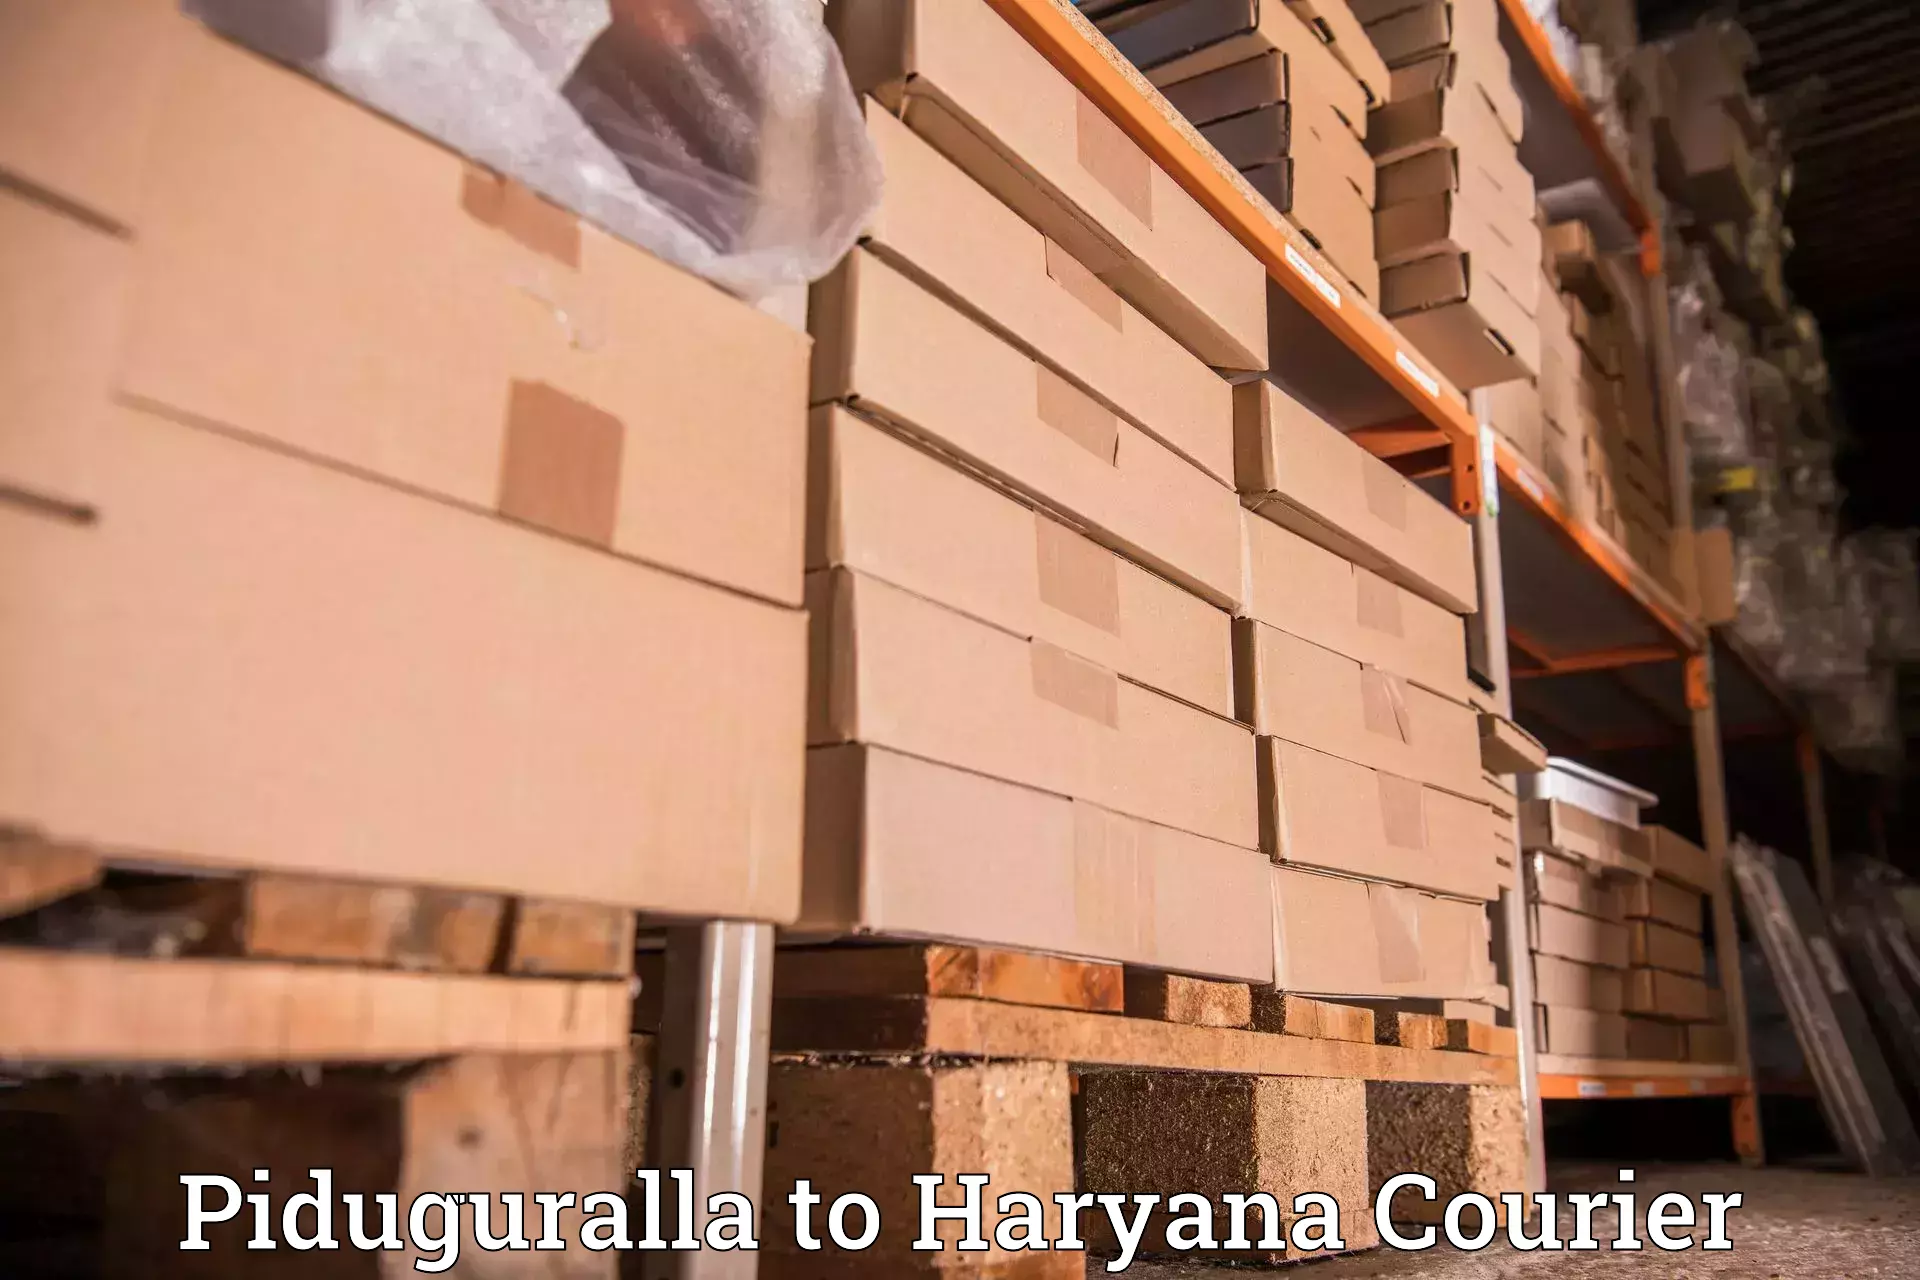 Local delivery service Piduguralla to Haryana